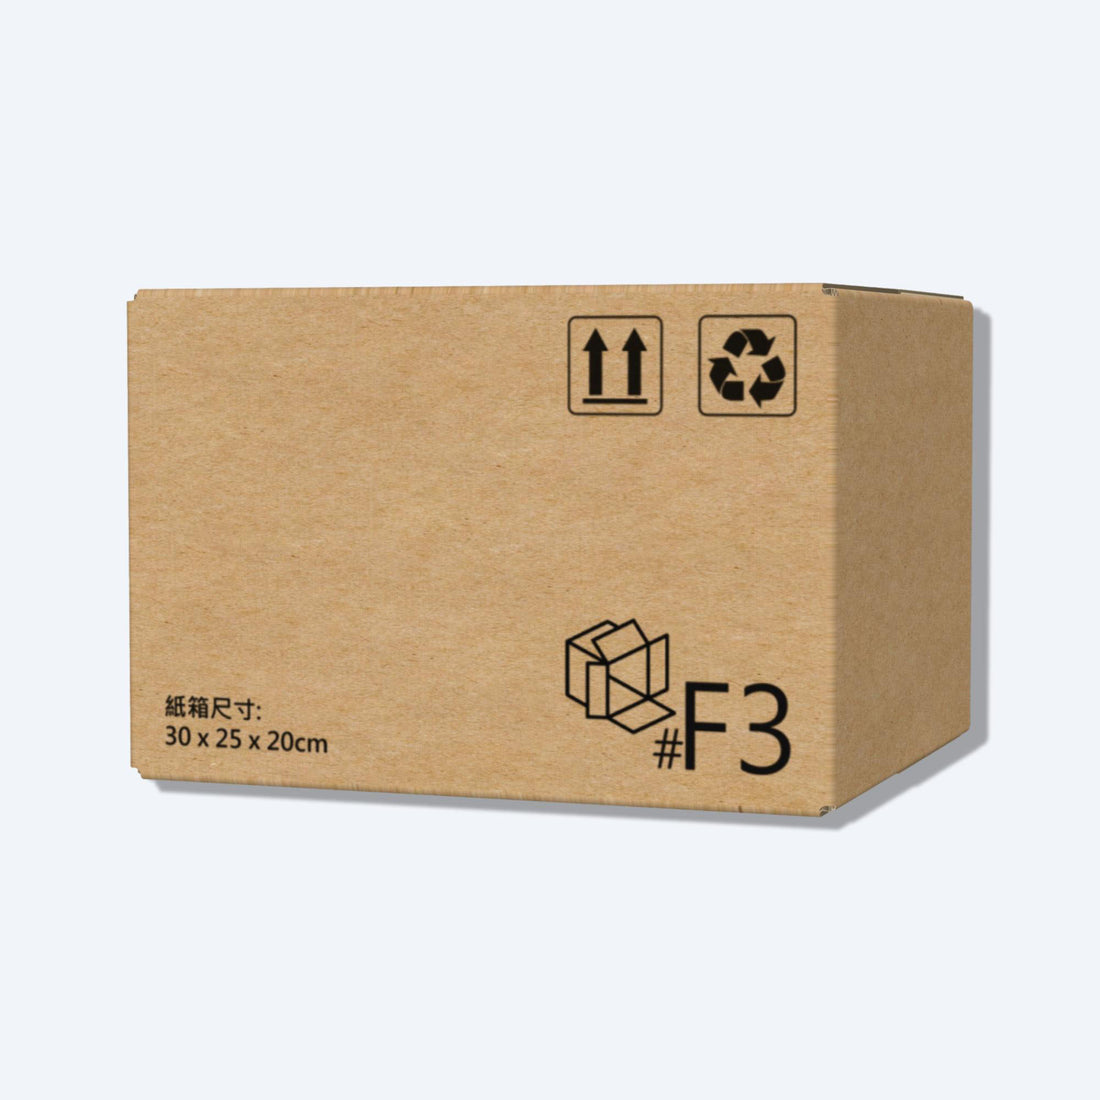 Express carton (SF carton F3 size)